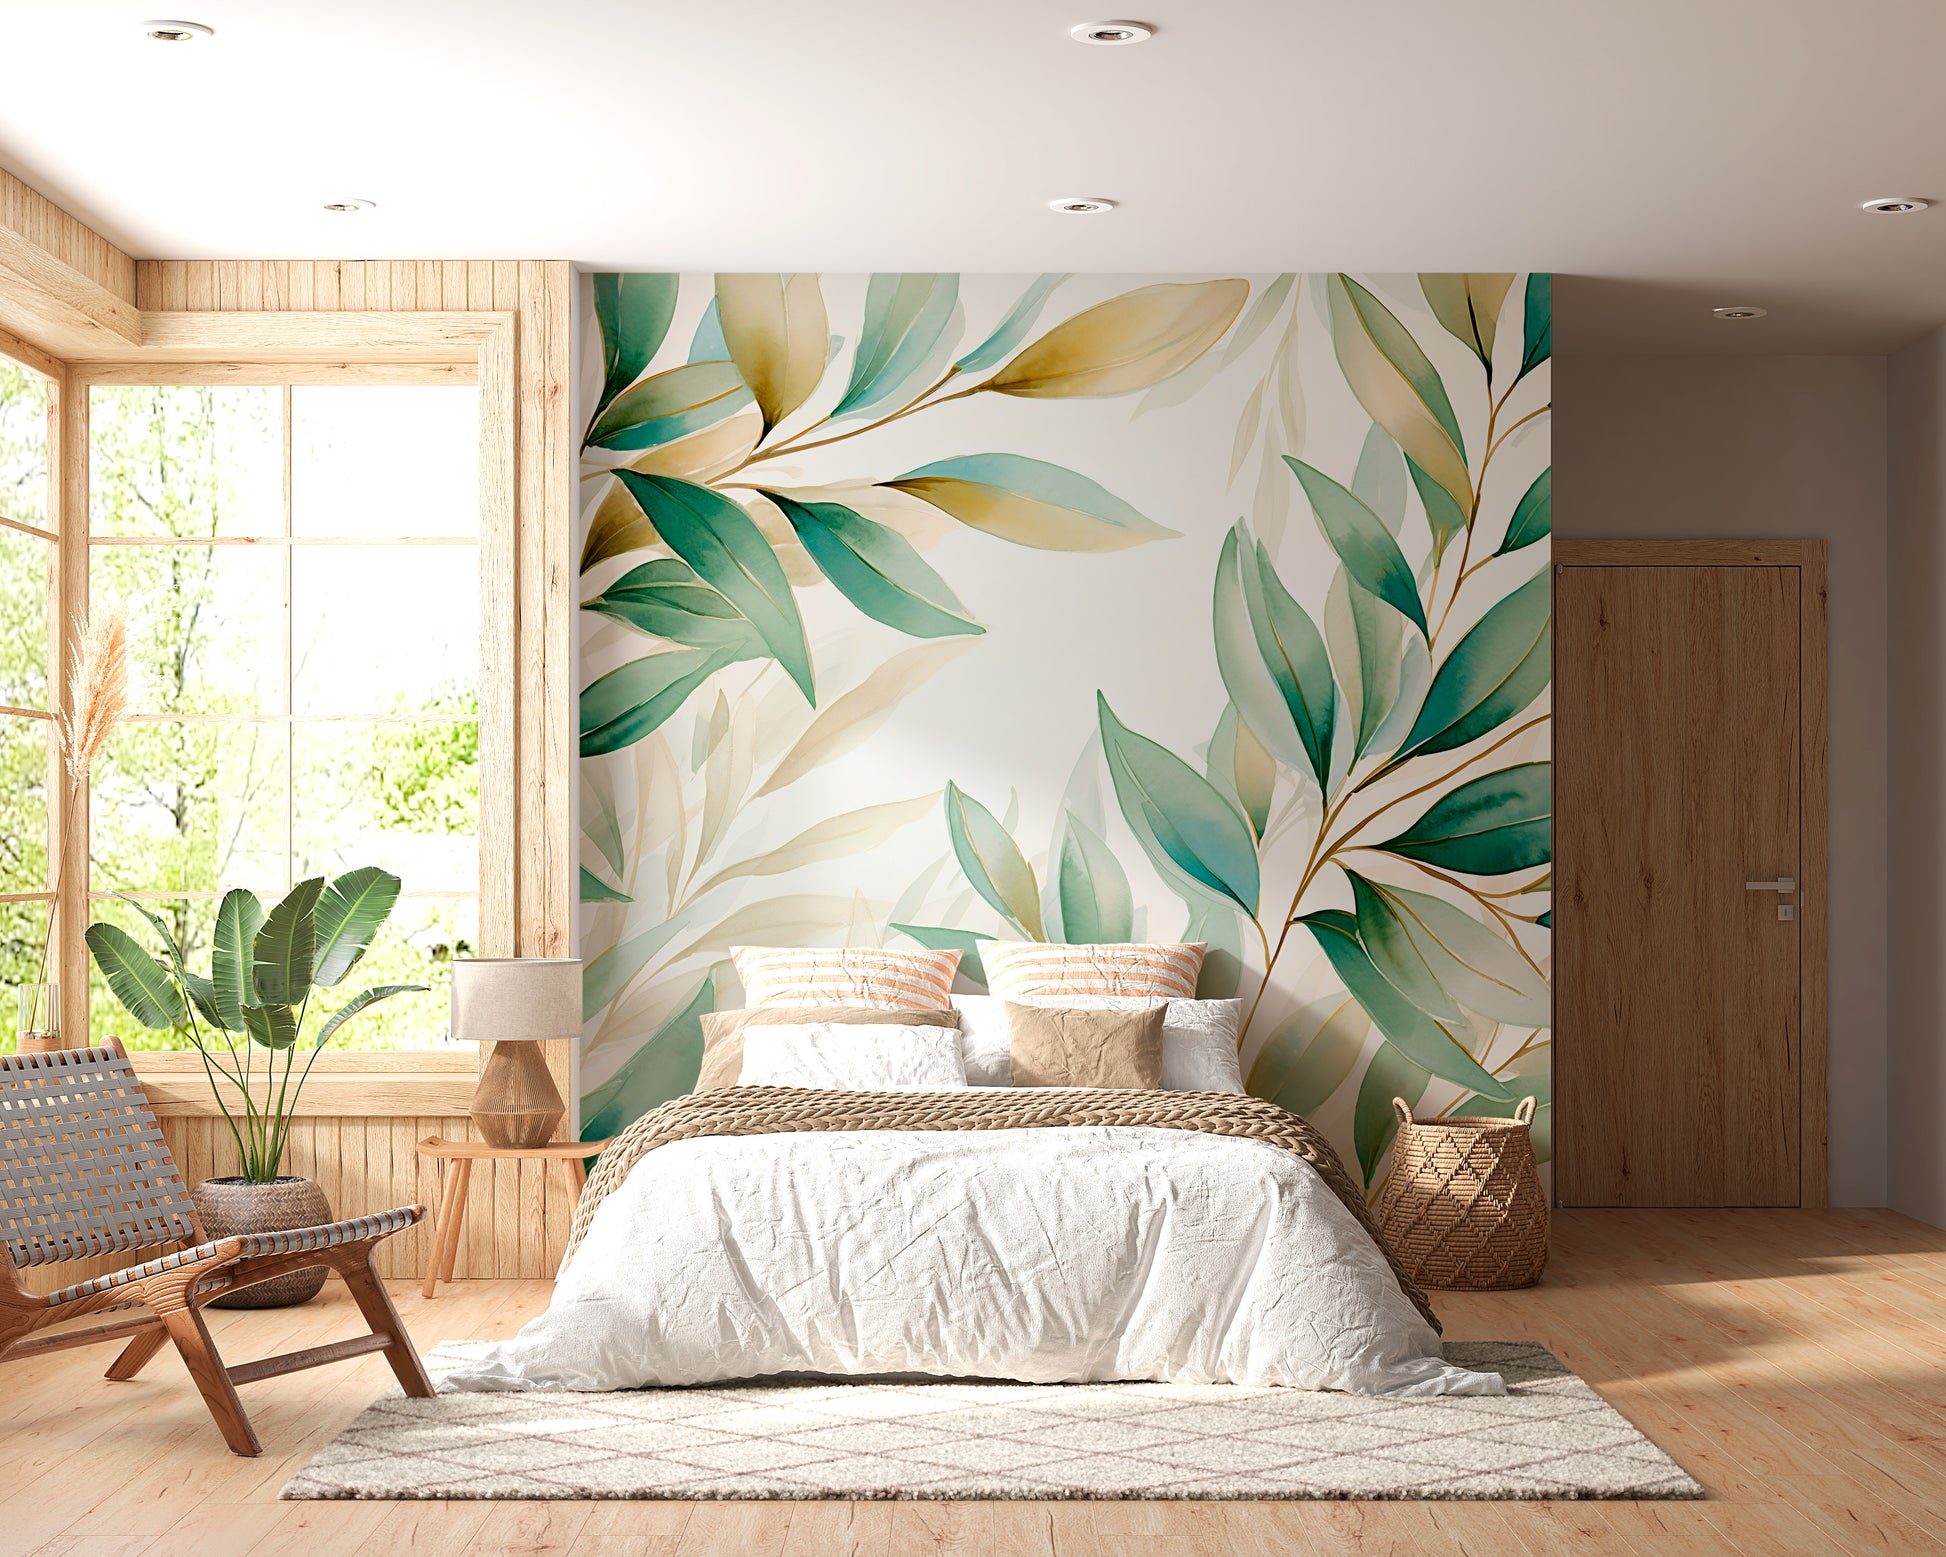 Botanical Inspired Room Decor